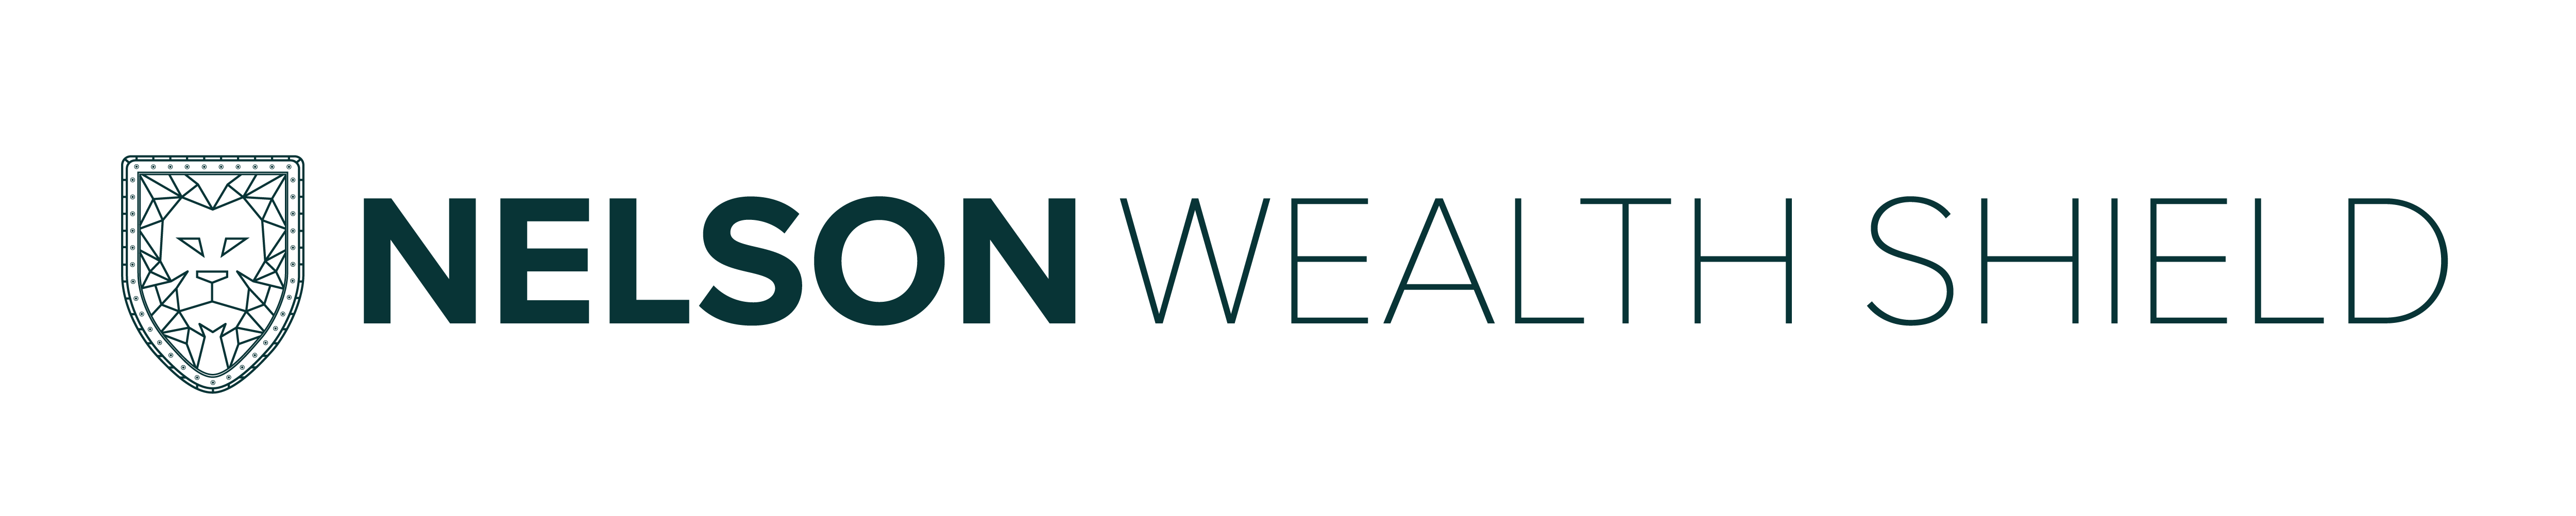 Nelson Wealth Shield